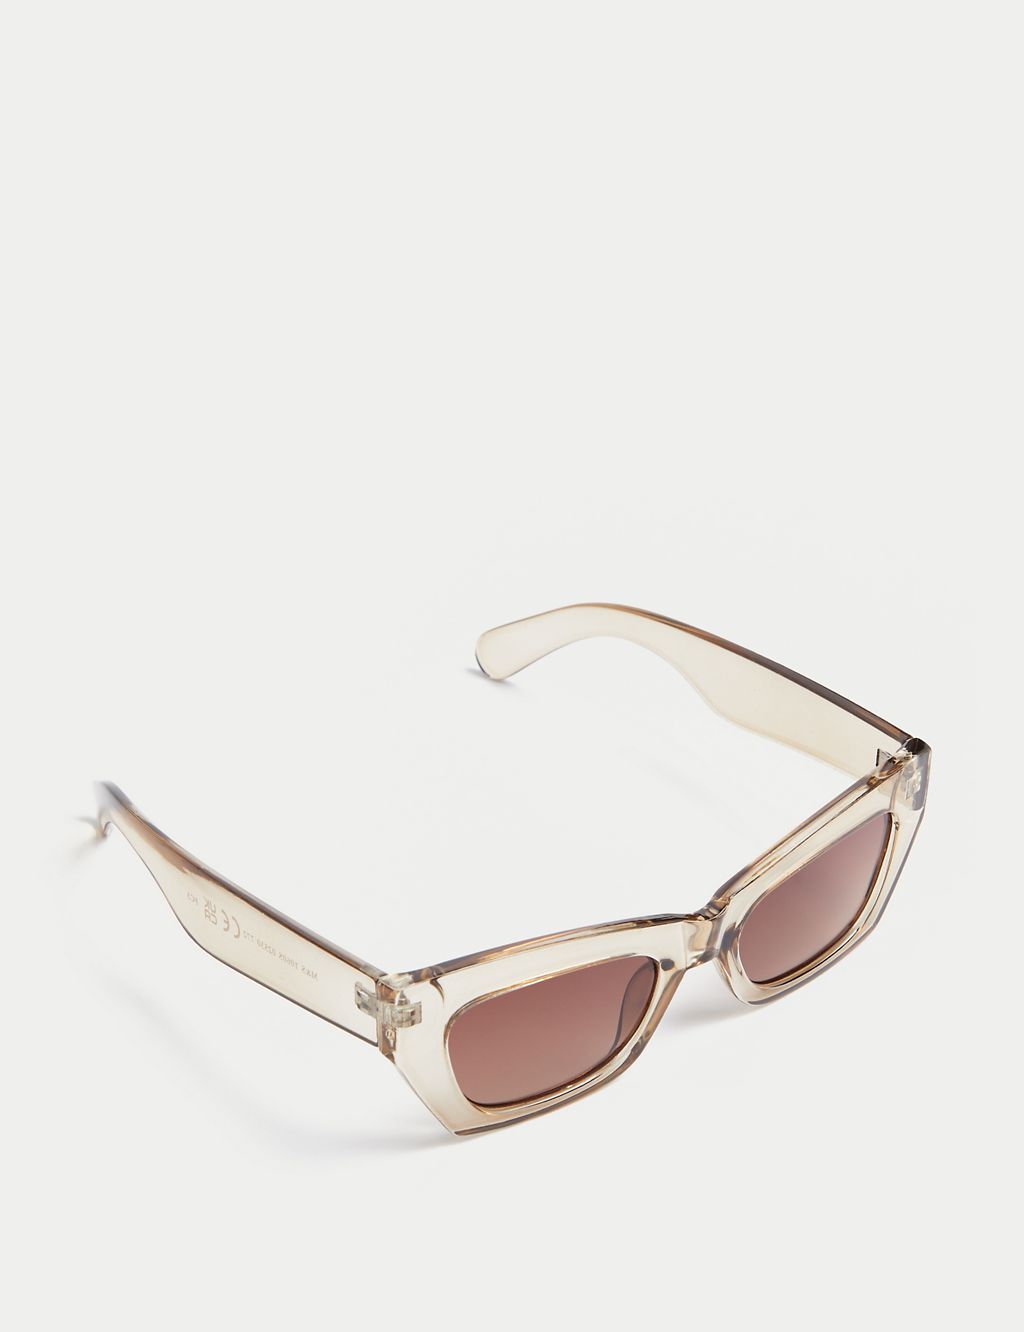 Angular Cat Eye Sunglasses 2 of 2